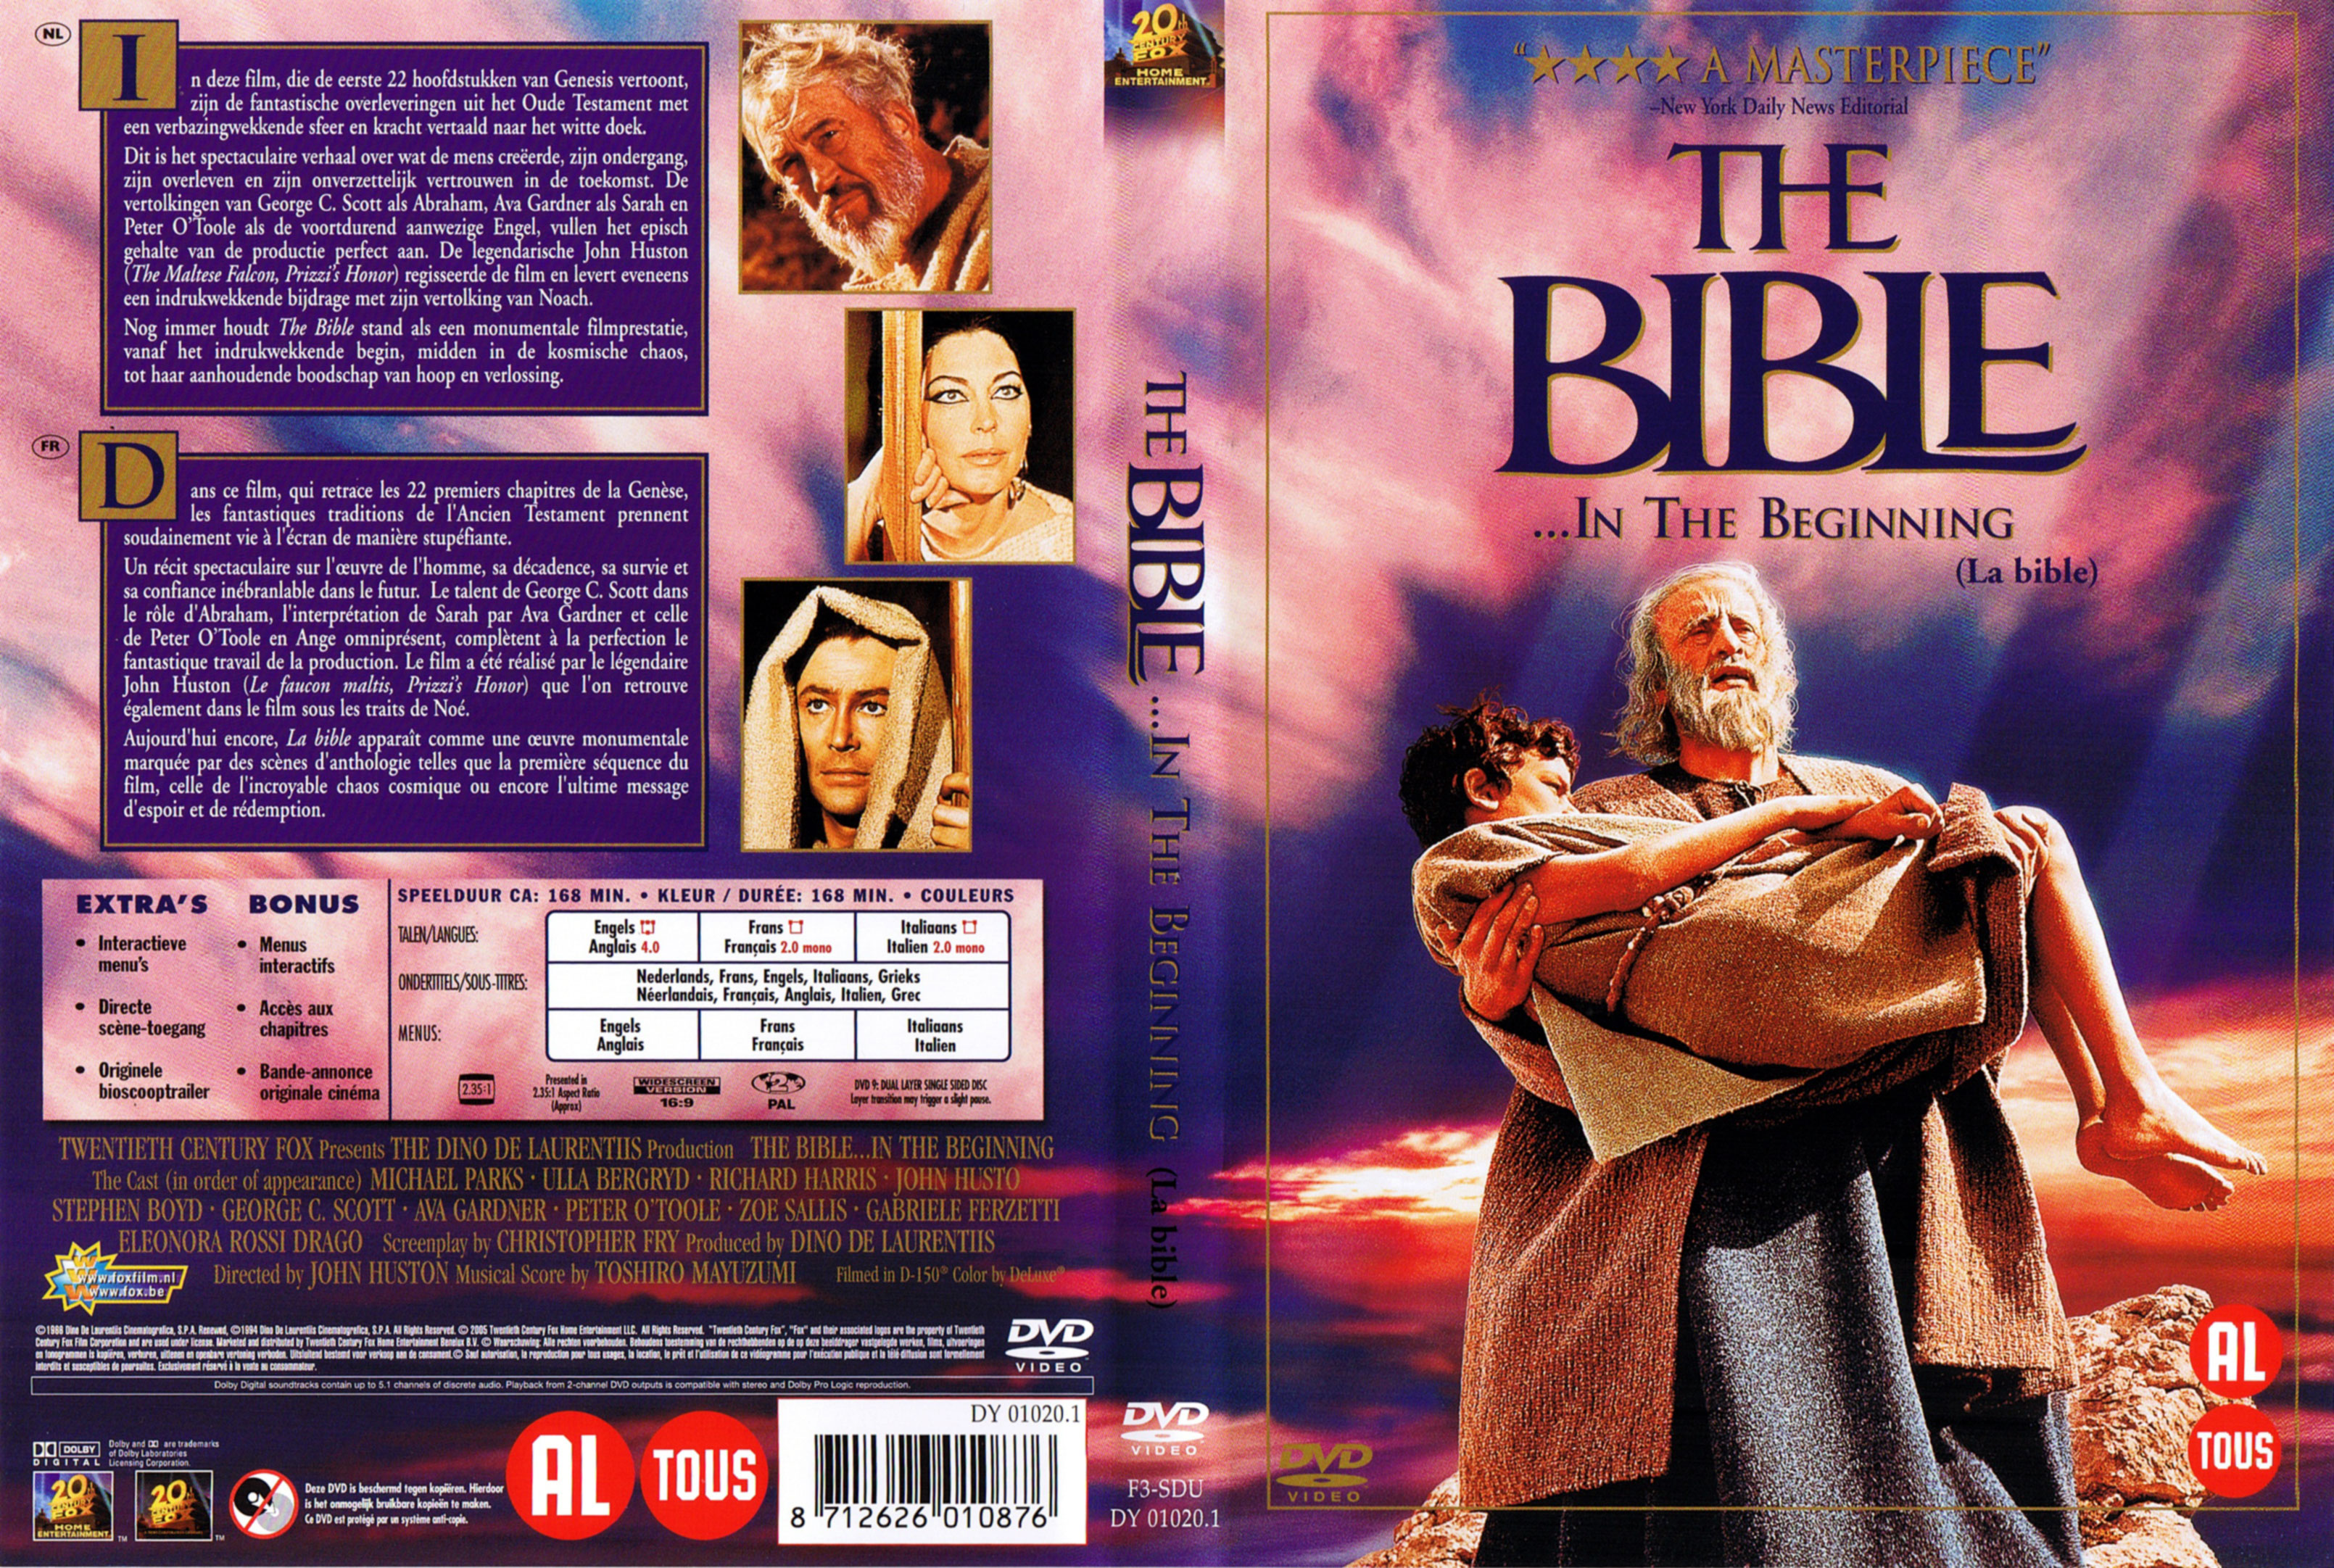 Jaquette DVD La bible v3